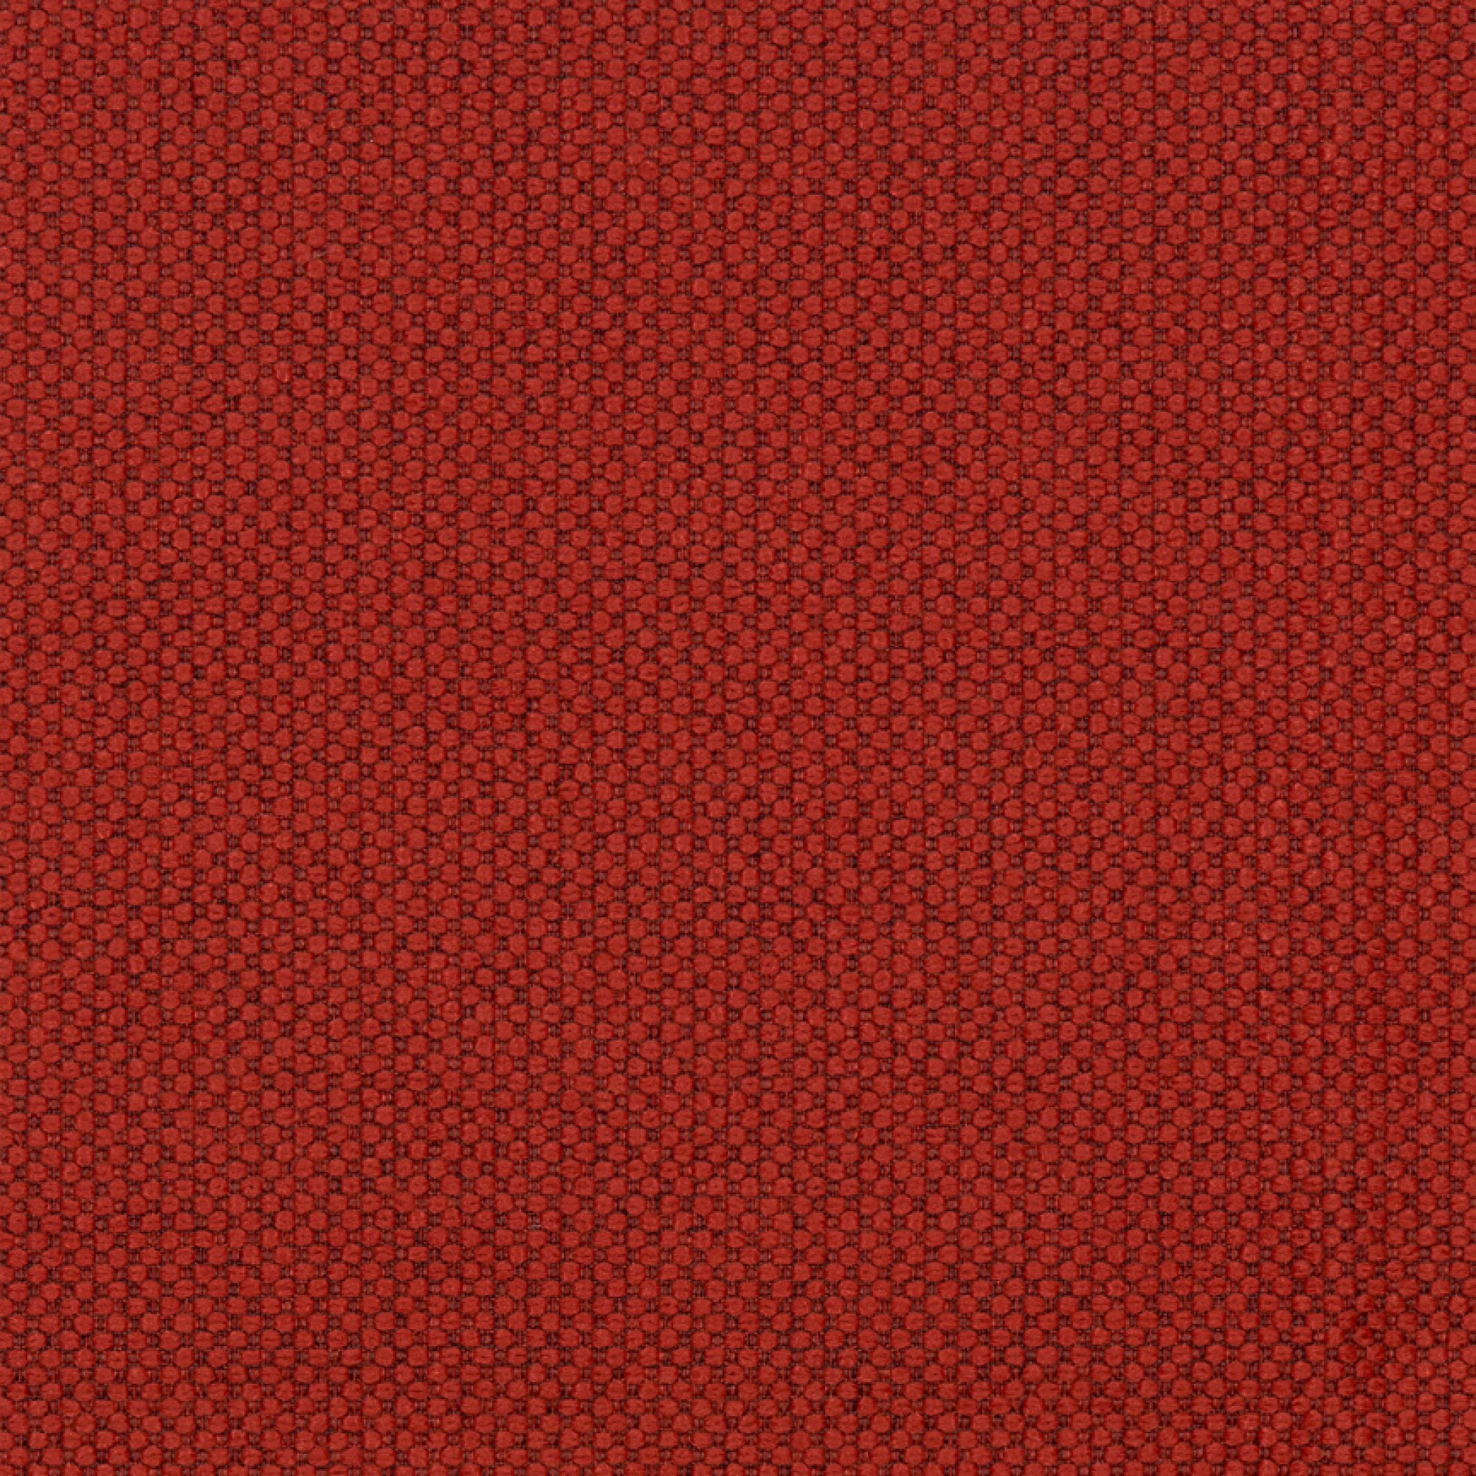 Fabric sample Merit 0038 red